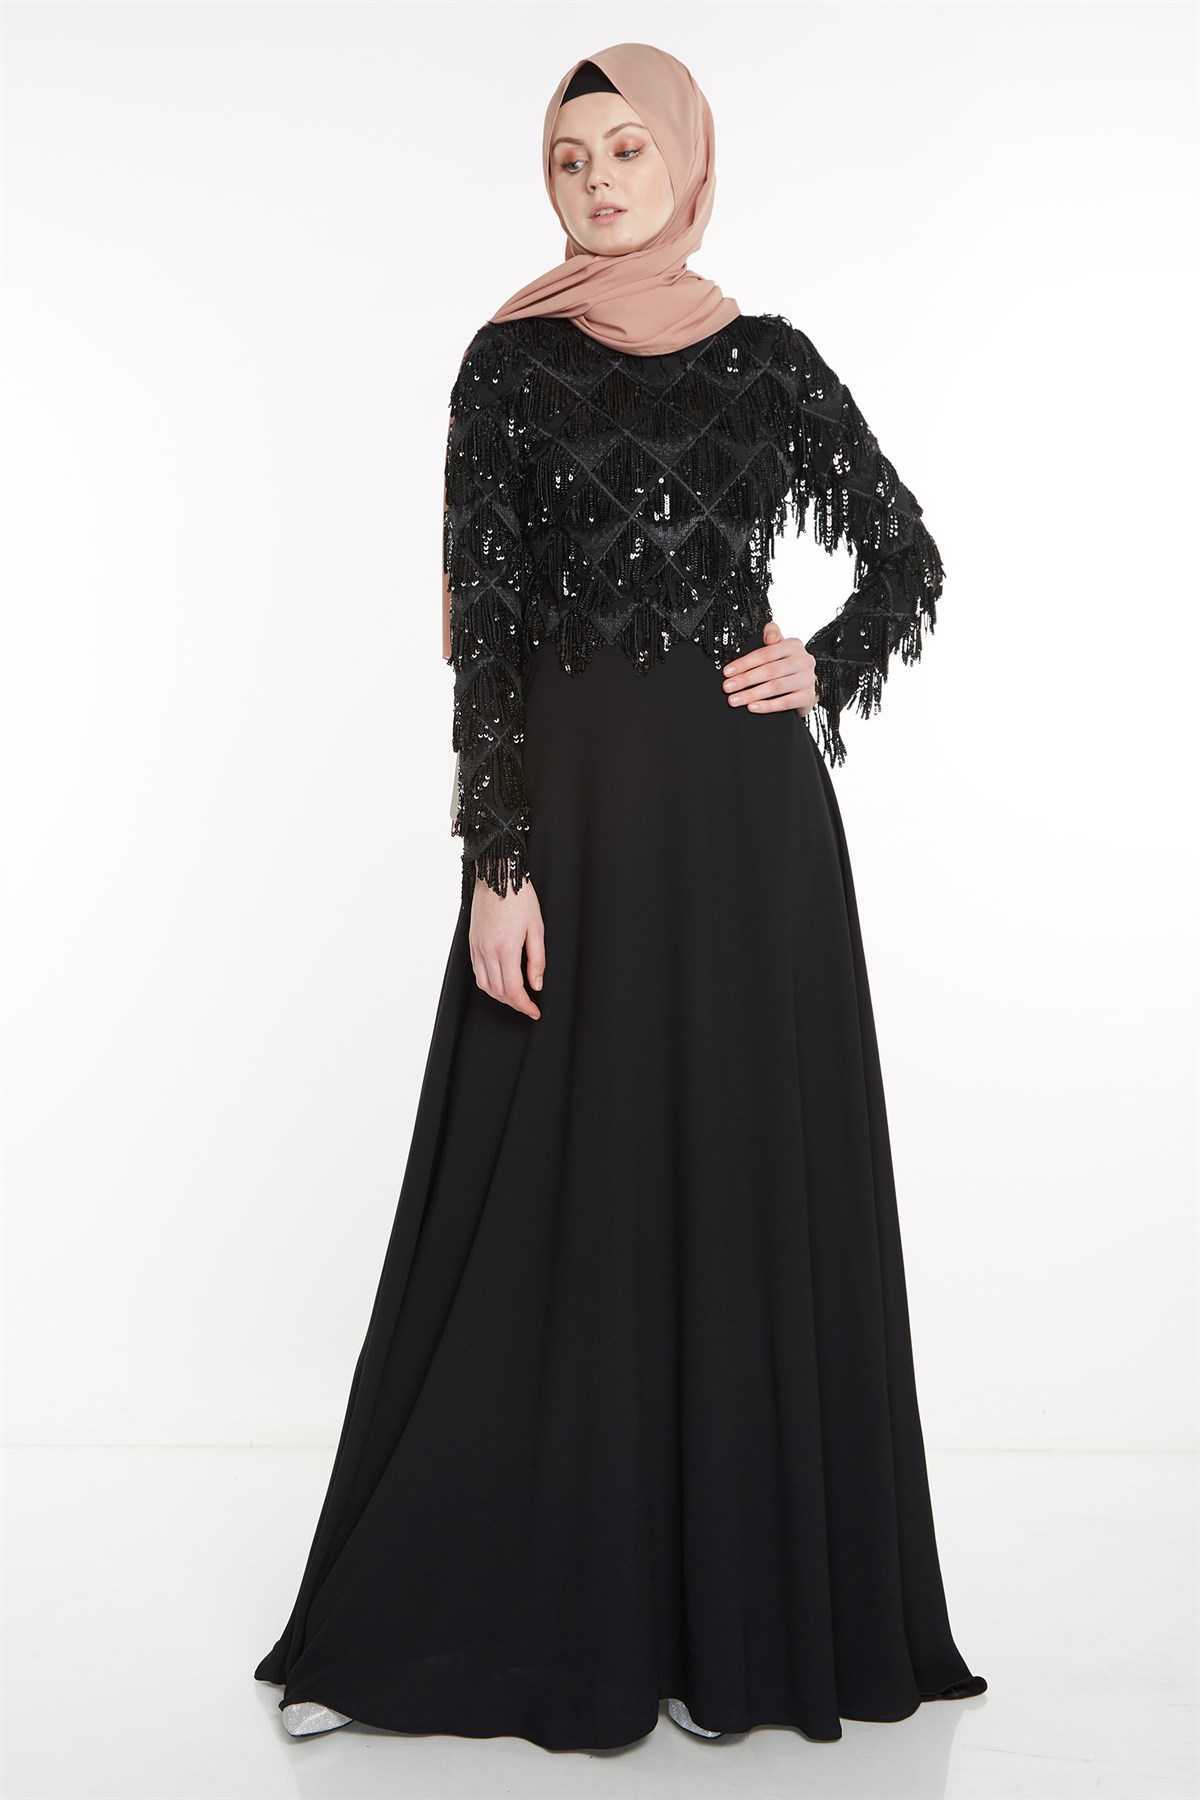 Nihan Pullu Tesettür Siyah Abiye Elbise Modelleri